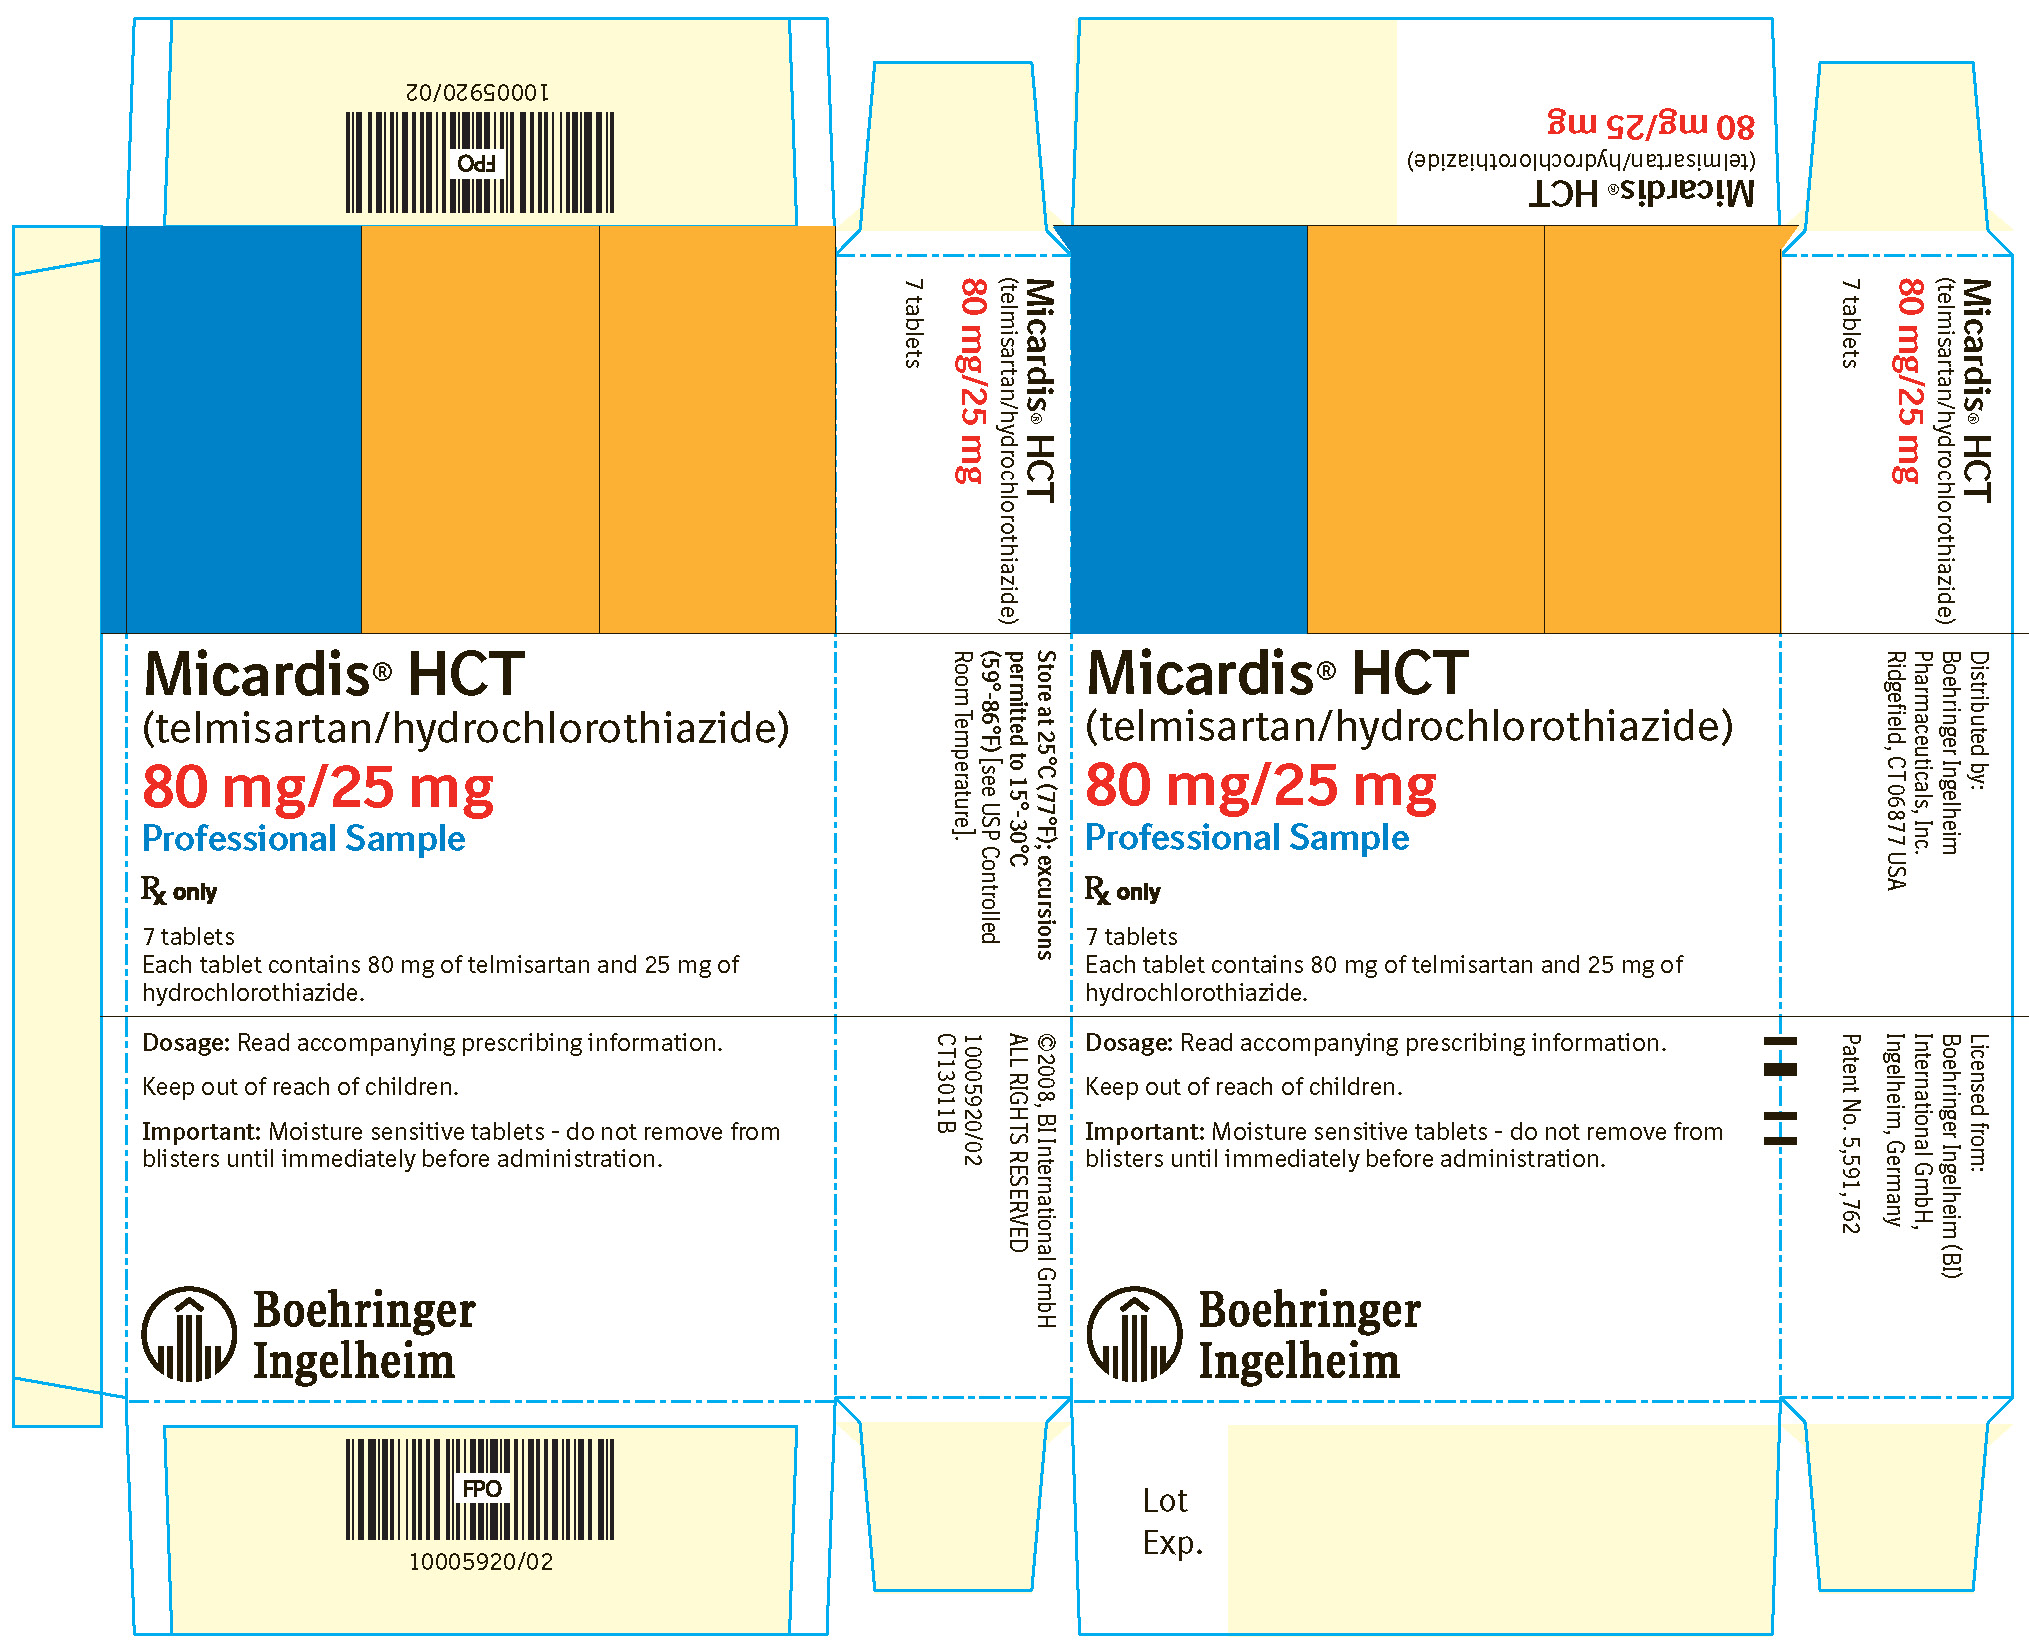 Micardis HCT 80 mg/25 mg 7 Tablets NDC 0597-0042-70